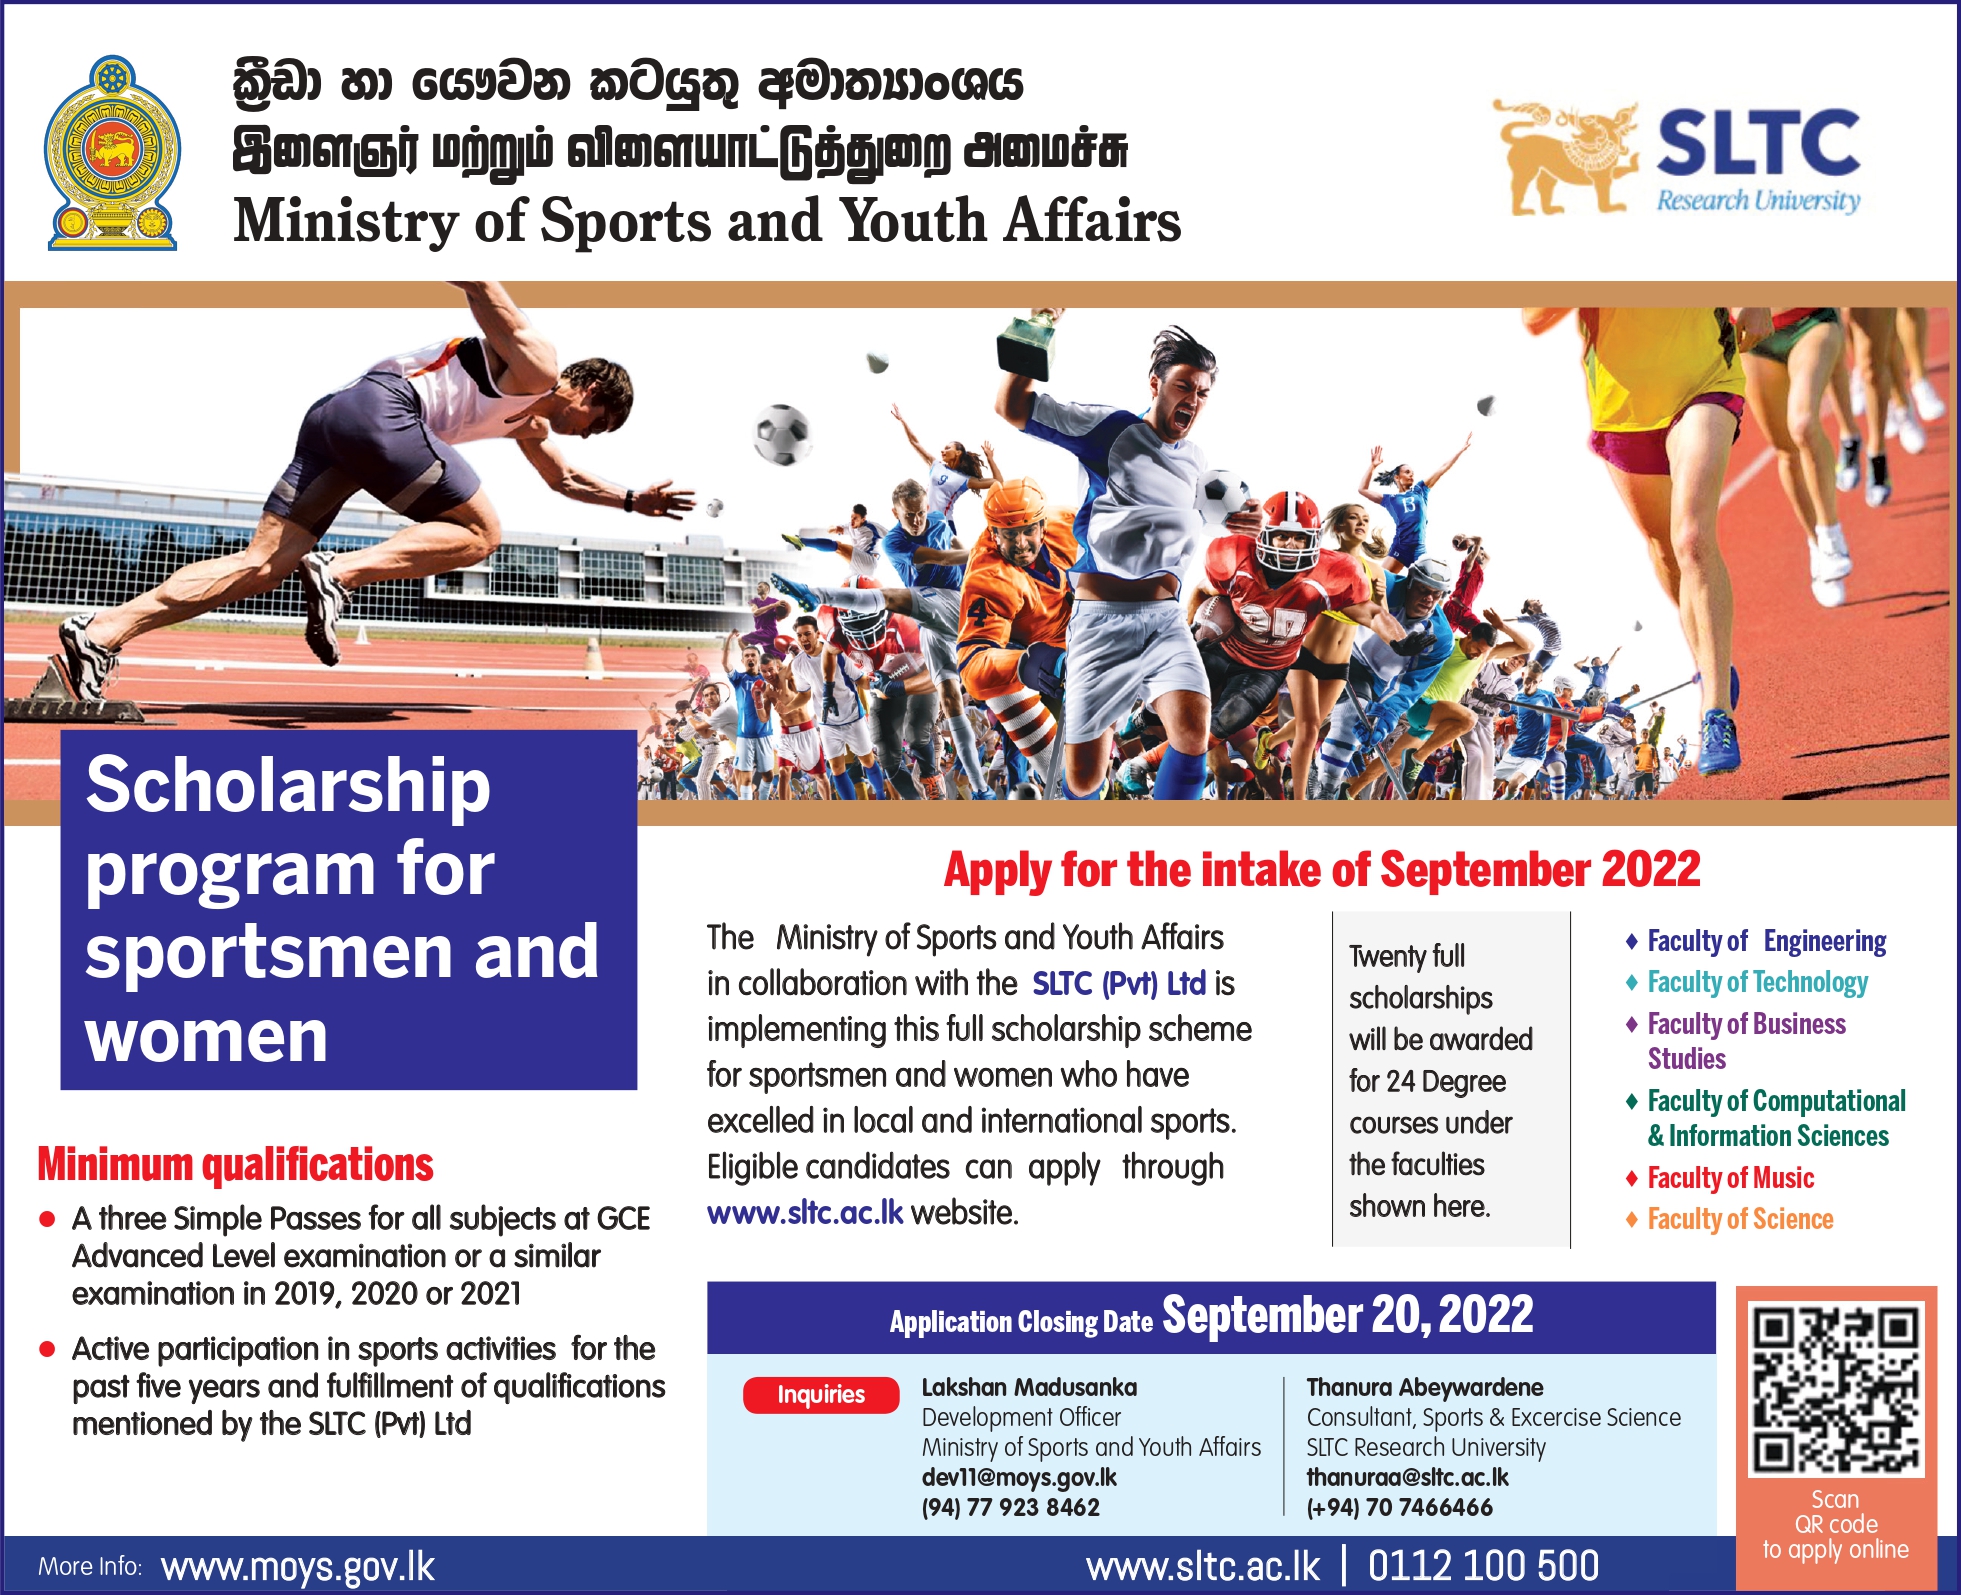 Scholarship program for sportsmen and women: Apply for the intake of September 2022